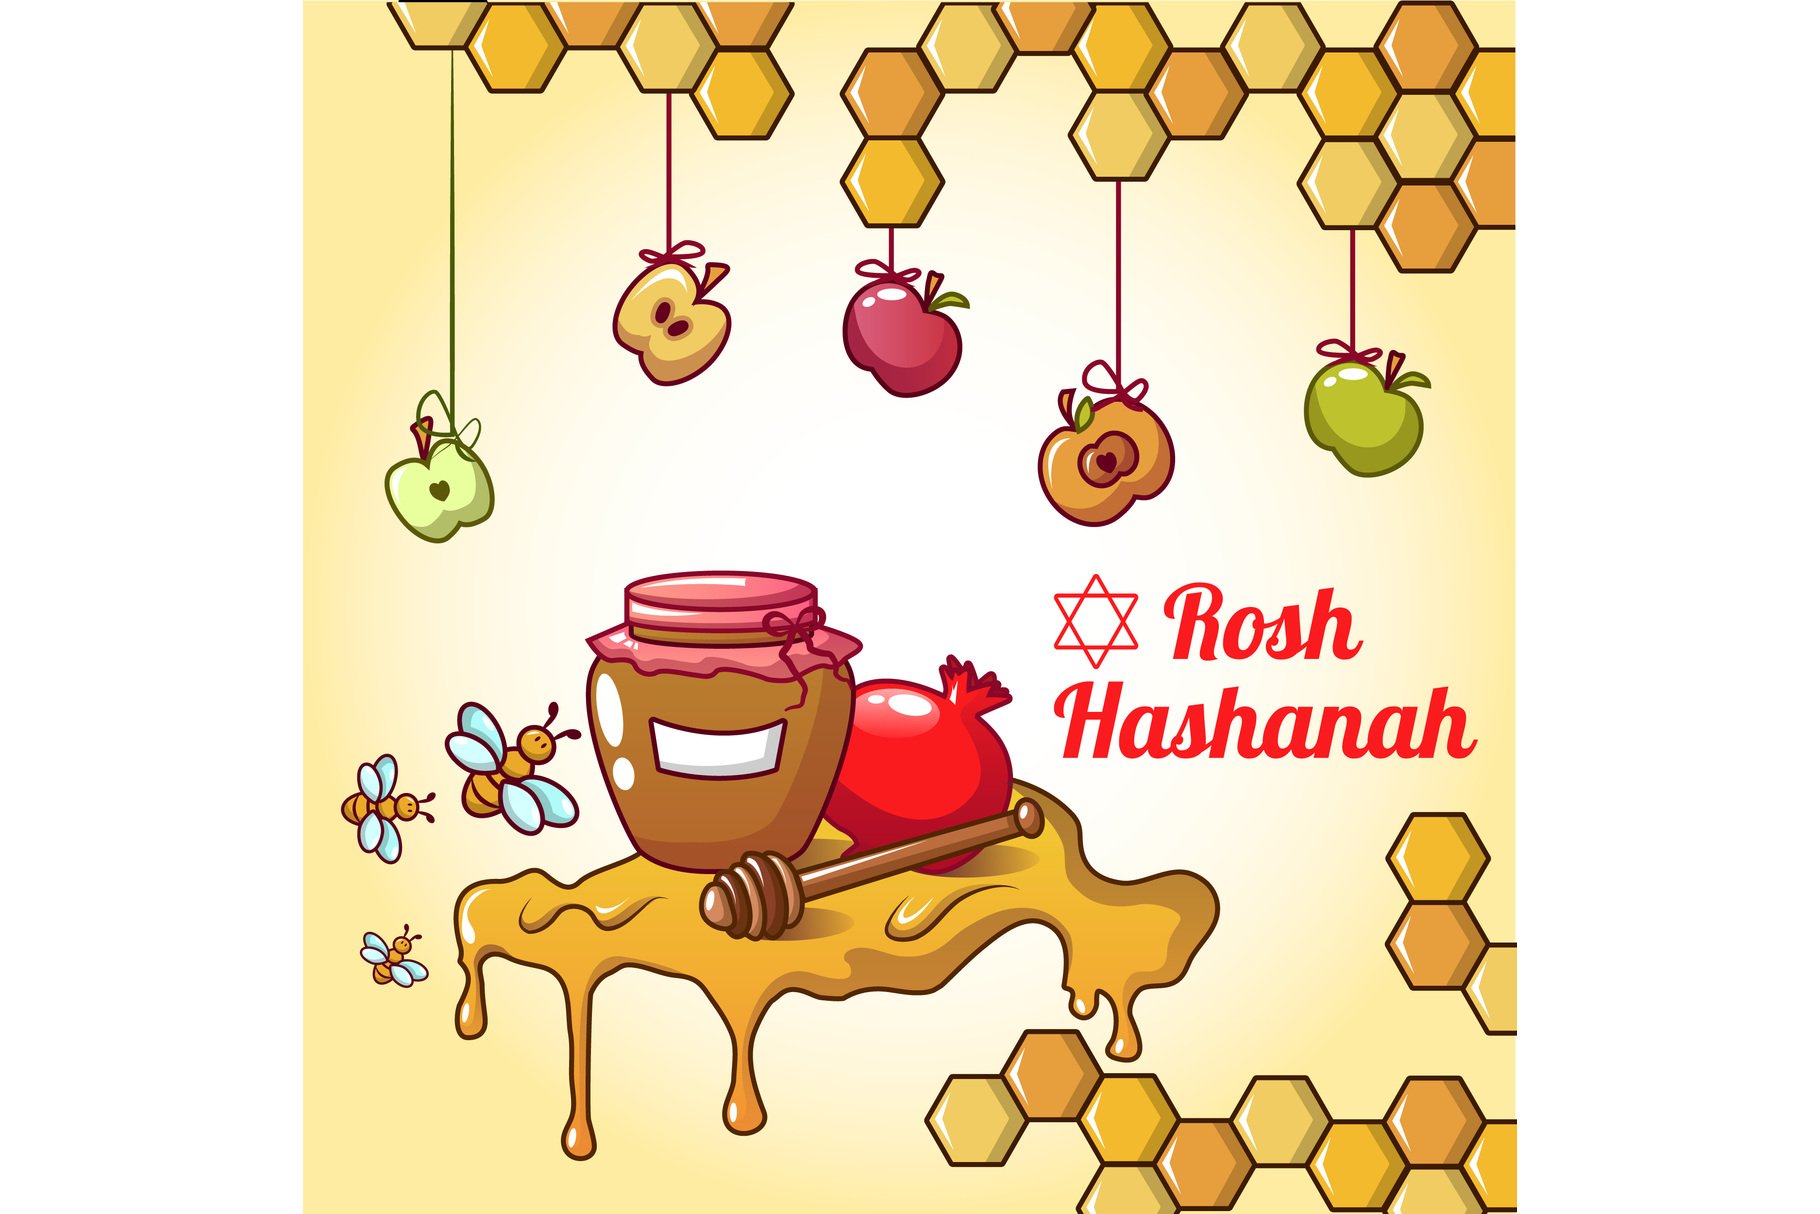 So sweet honey for Rosh Hashanah.